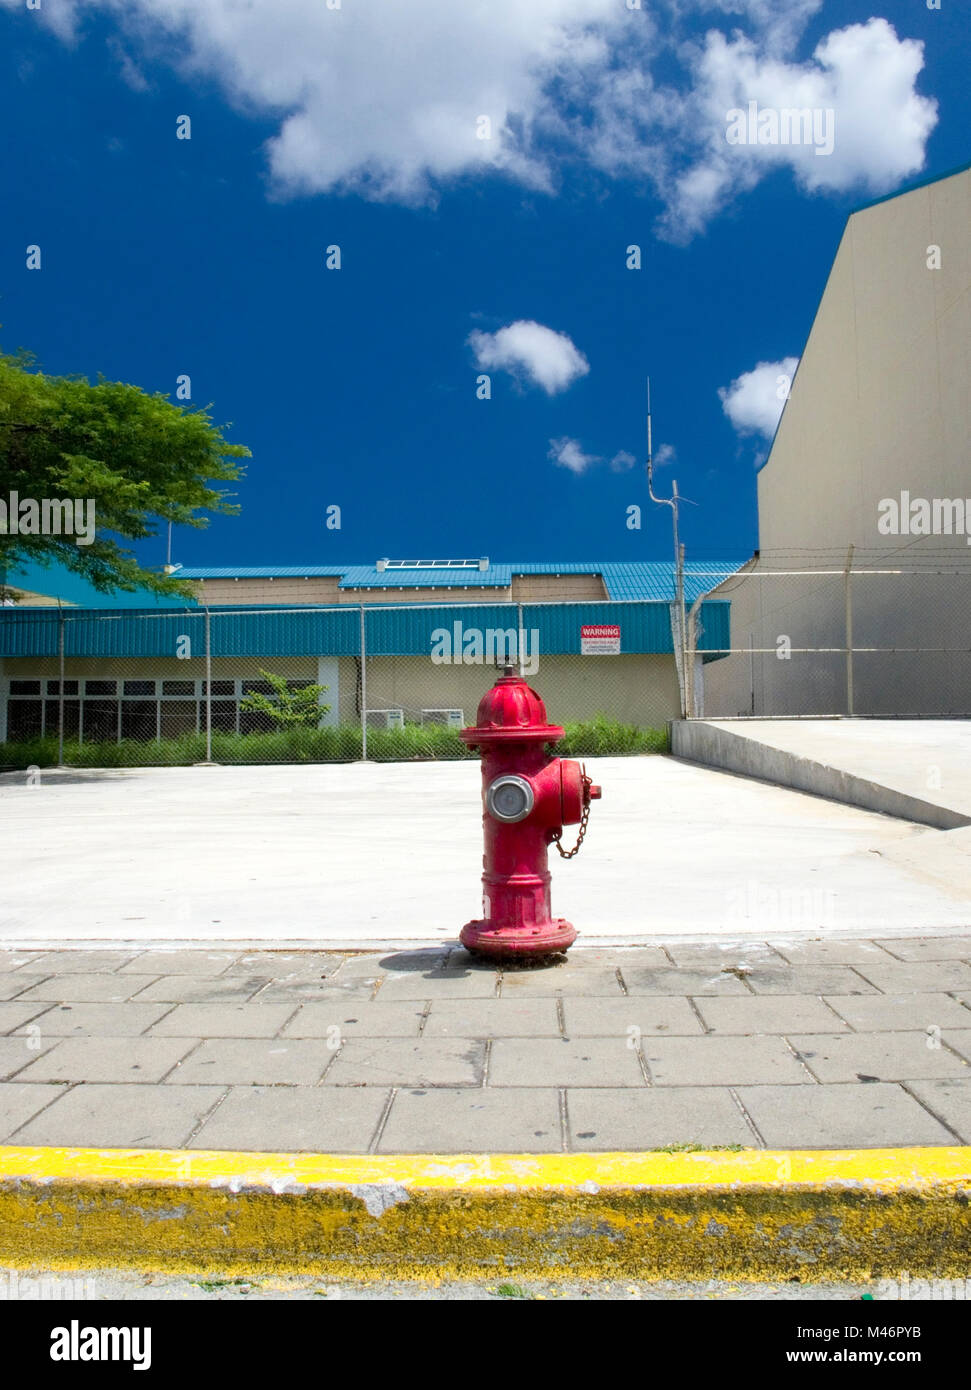 Red Fire Hydrant, aéroport d'Oranjestad, Antilles néerlandaises, Aruba, Caraïbes Banque D'Images